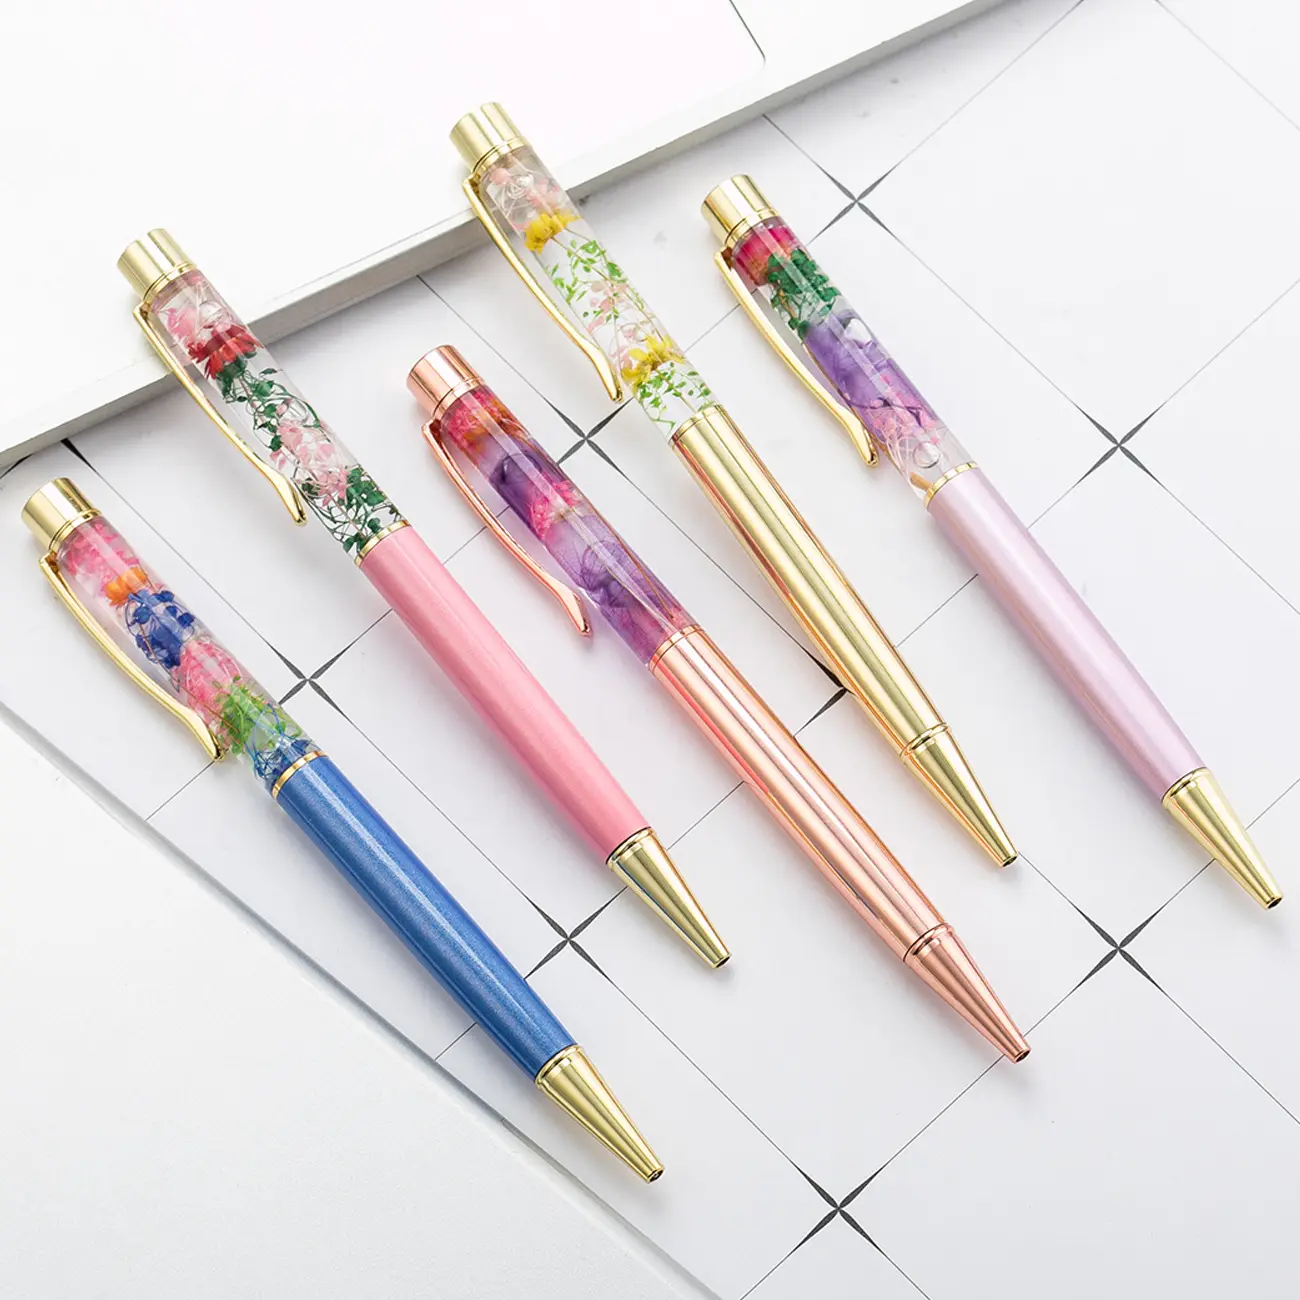 Özel yeni çiçek moda kristal yüzer Glitter kalem herbaryum tükenmez kalem